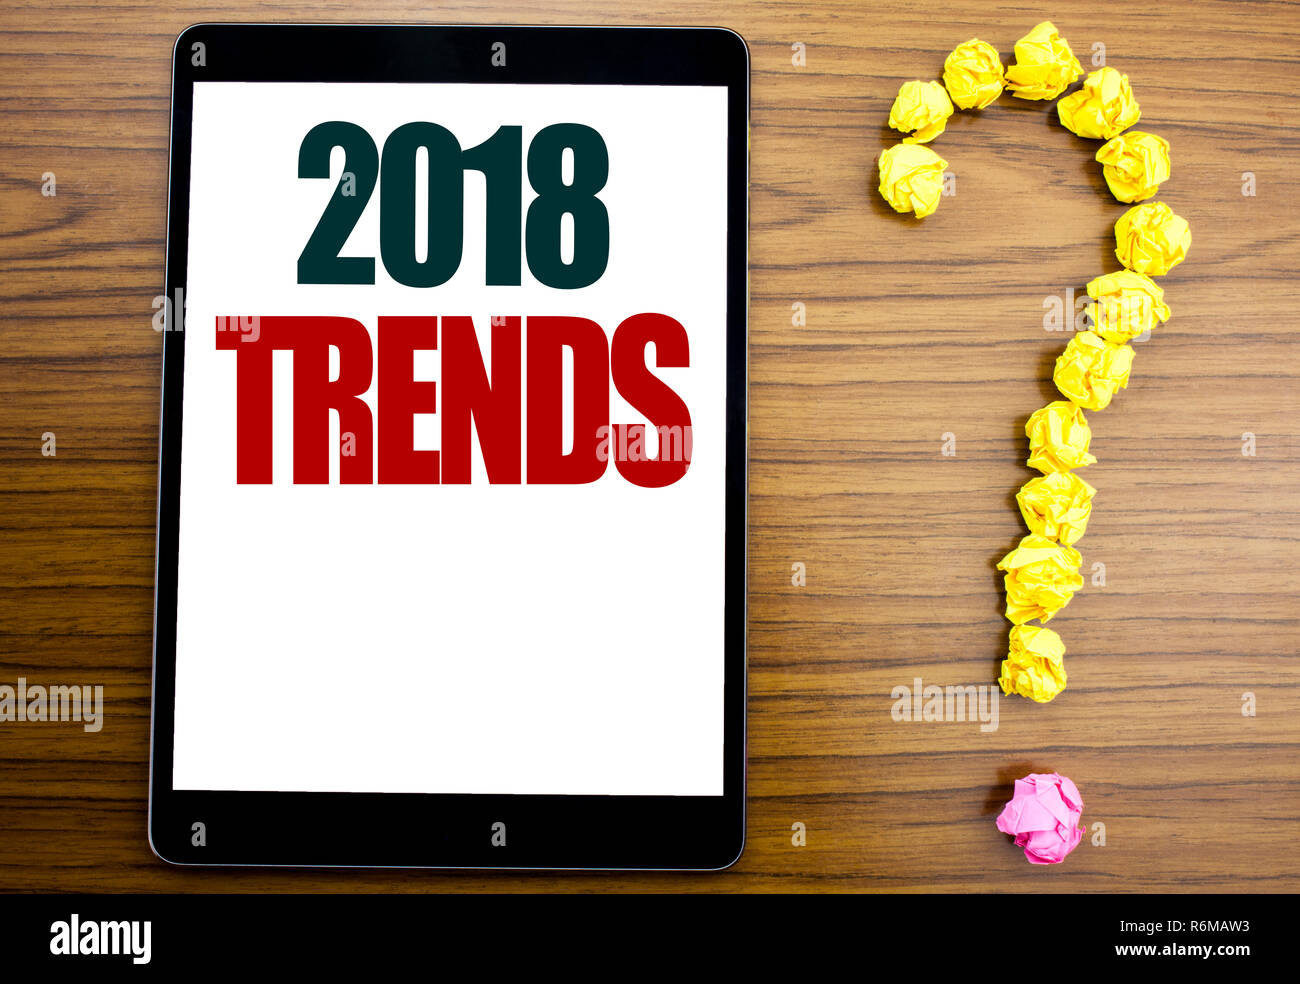 Wort, 2018 Trends schreiben. Business Konzept für Trenddaten Vorhersage auf Tablet geschrieben, Holz- Hintergrund mit Fragezeichen am Ende. Stockfoto